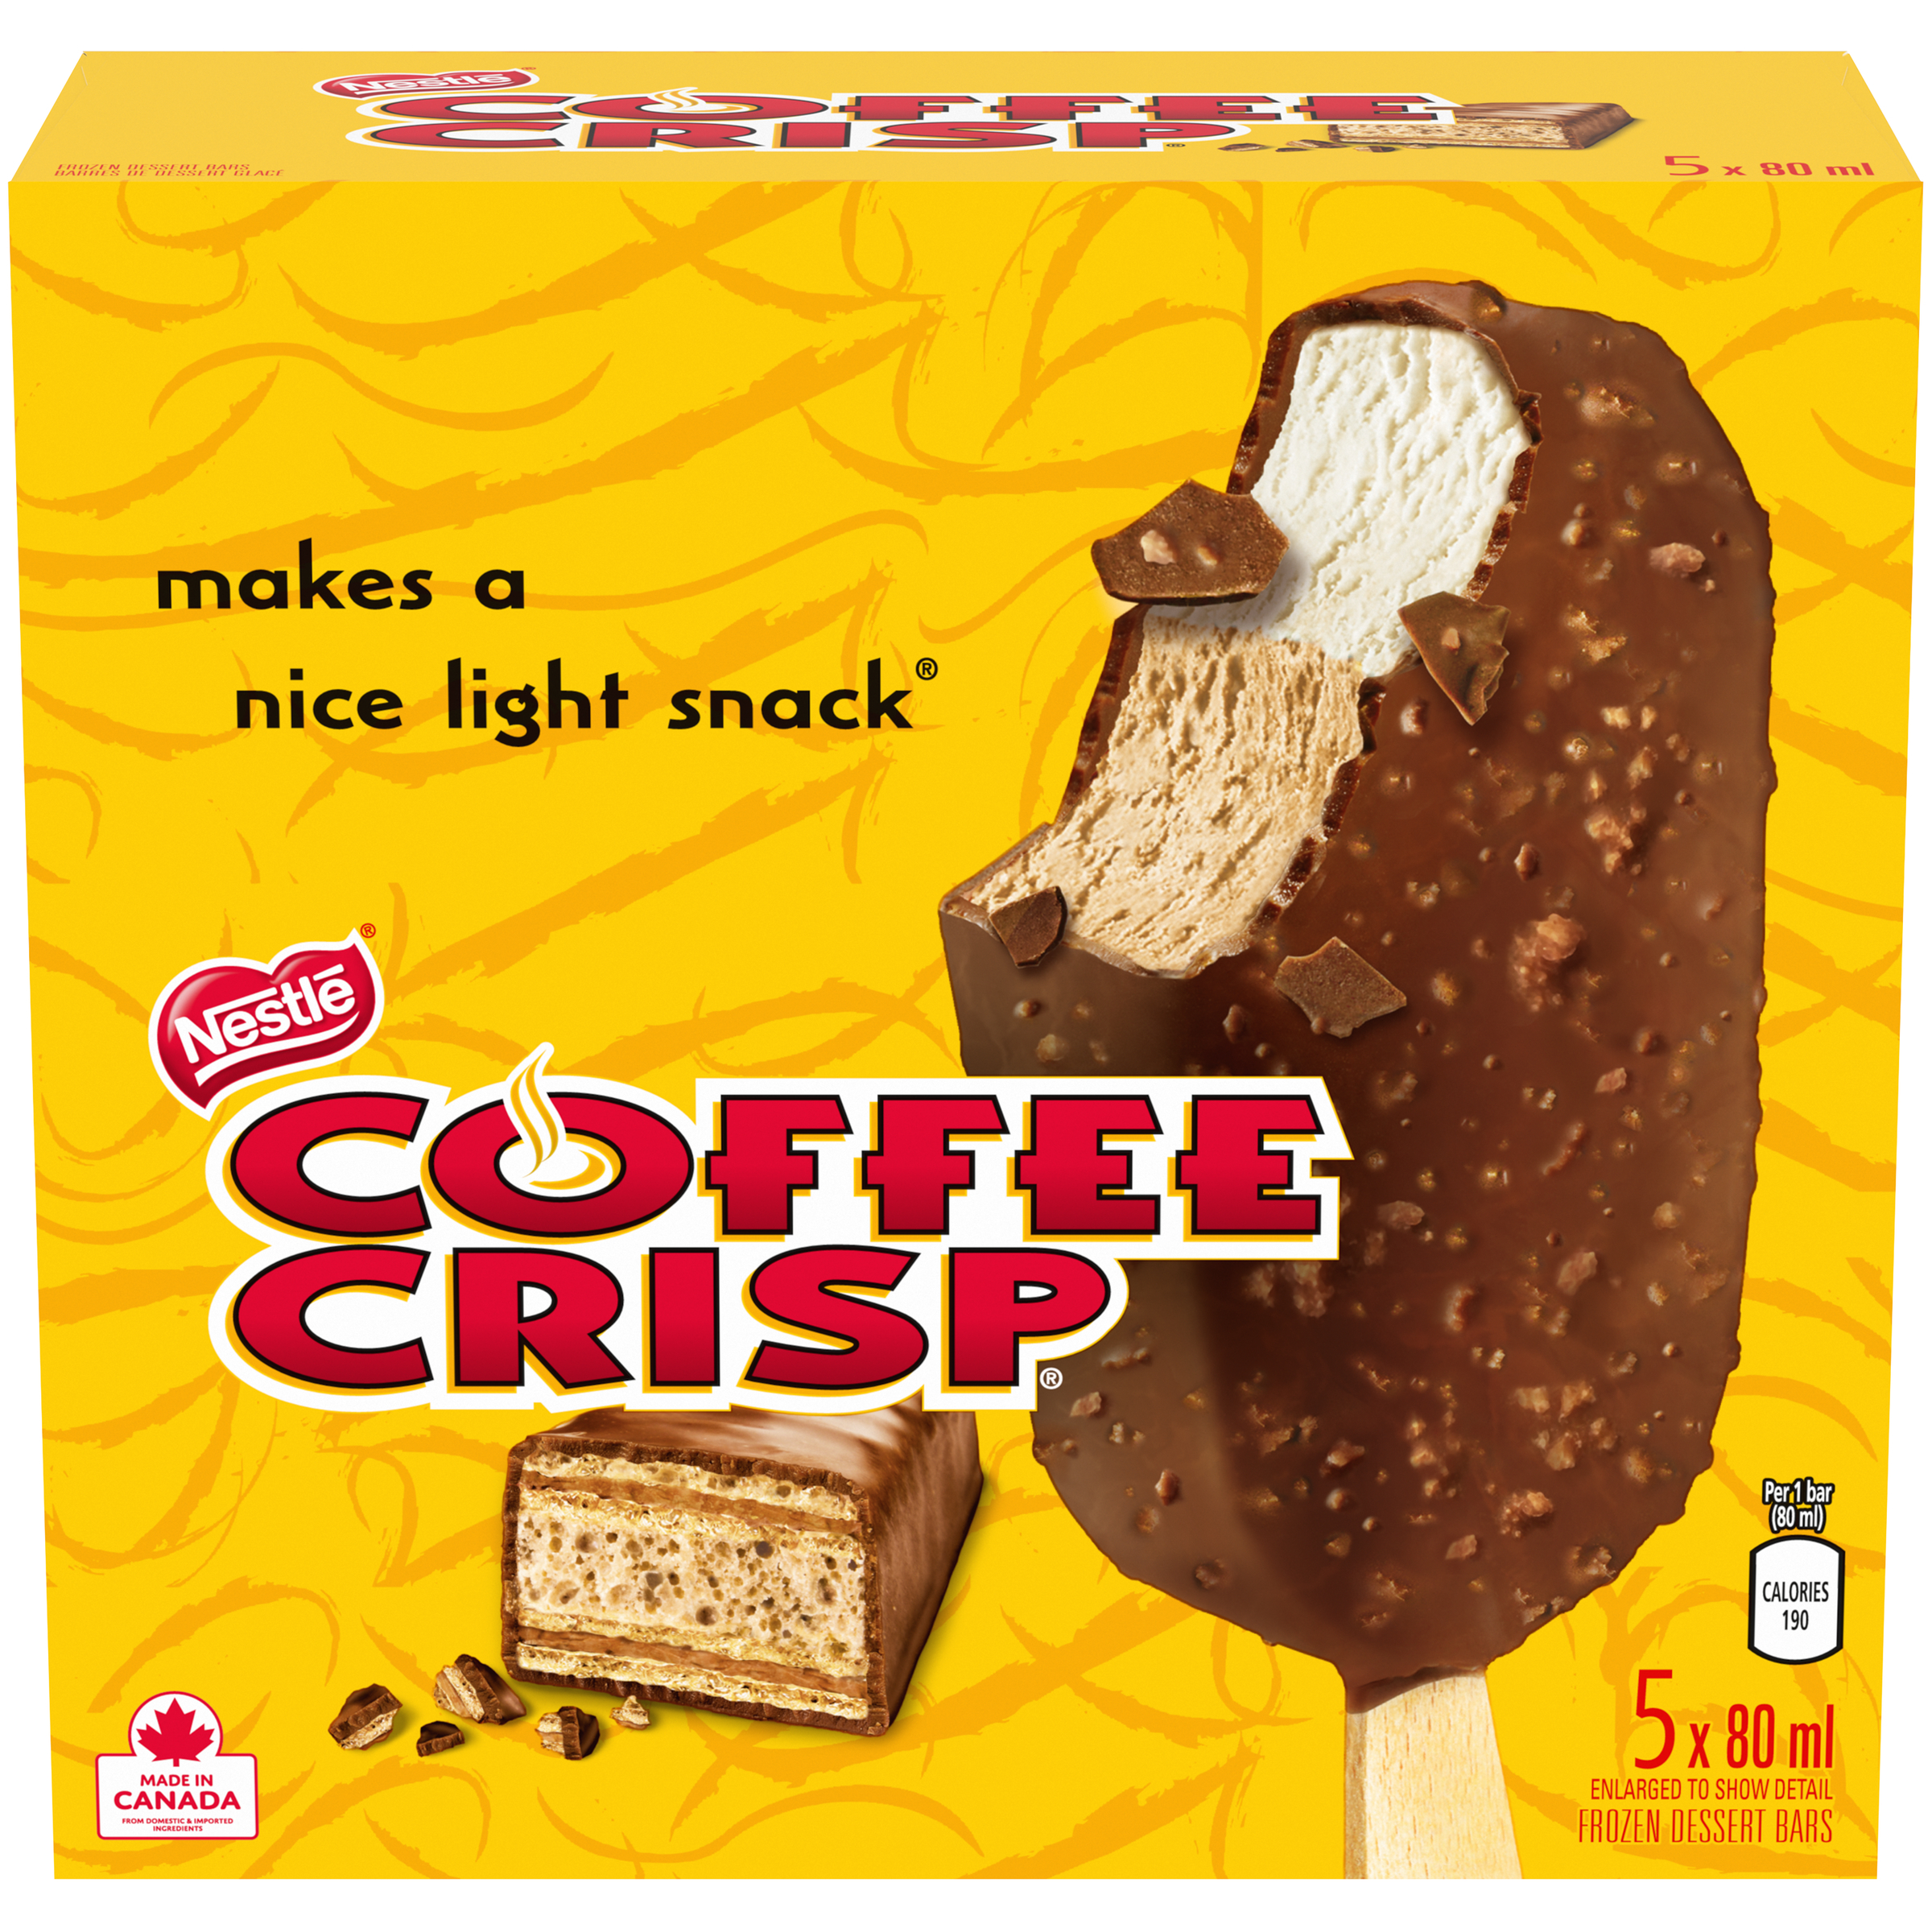 NESTLÉ® COFFEE CRISP® Frozen Dessert Bars (5 x 80ml)